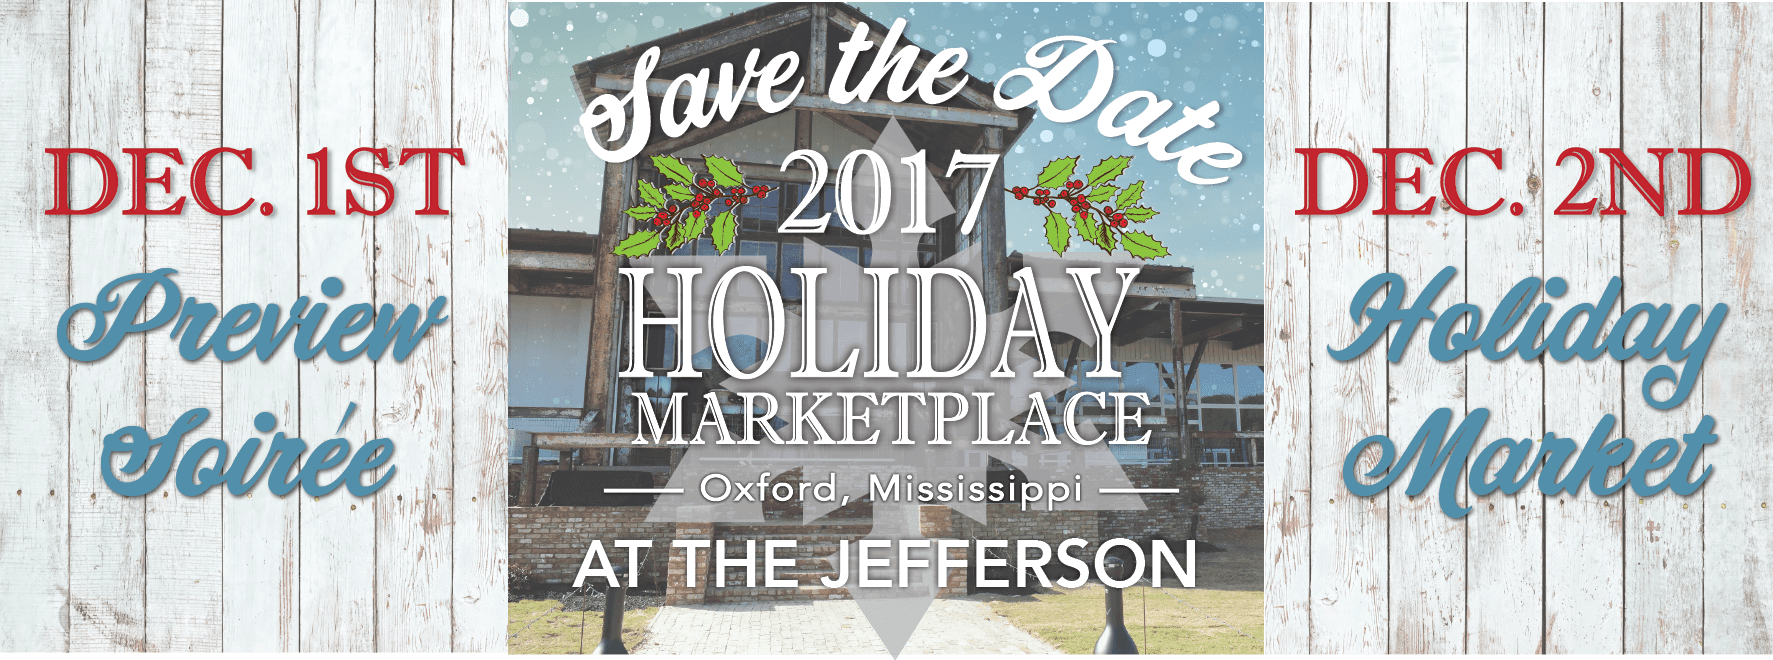 Holiday Marketplace 2017